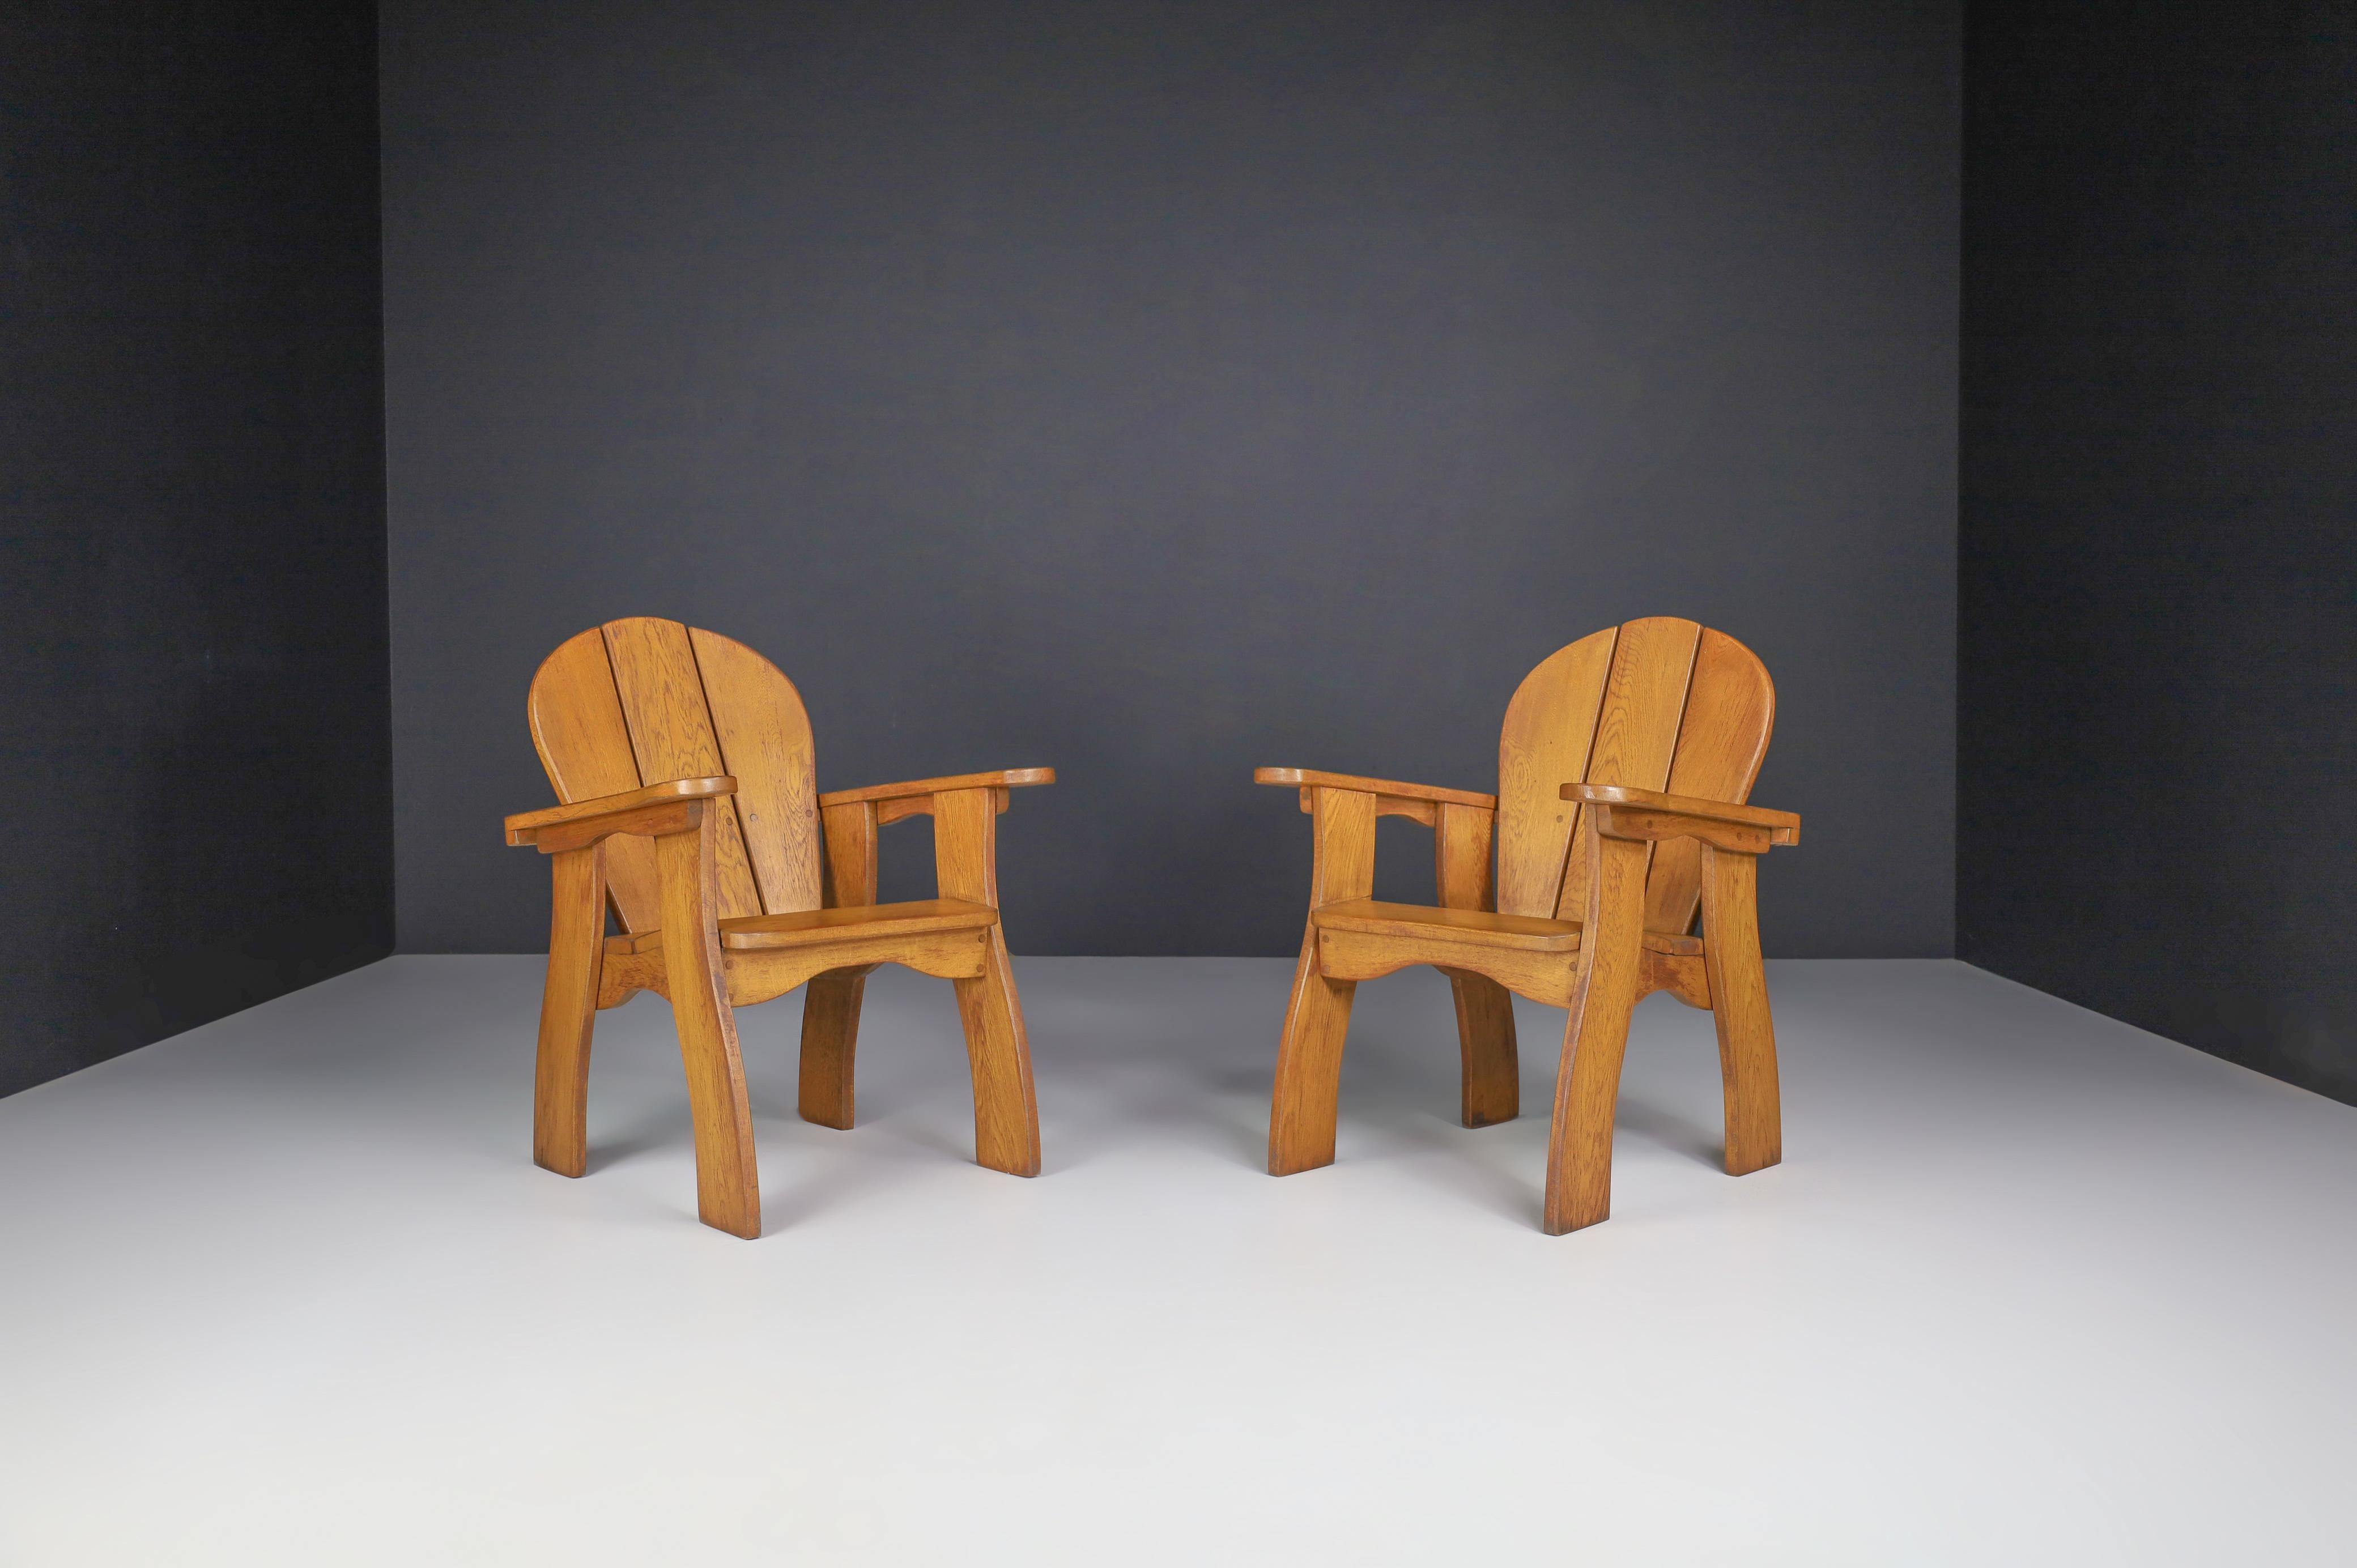 Satz von zwei skulpturalen Sesseln aus Eiche, Frankreich, 1960er Jahre.

Das Set aus zwei skulpturalen Sesseln besteht aus französischer Eiche und wurde in den 1960er Jahren in Frankreich von Hand gefertigt. Die Handwerkskunst ist noch sichtbar;